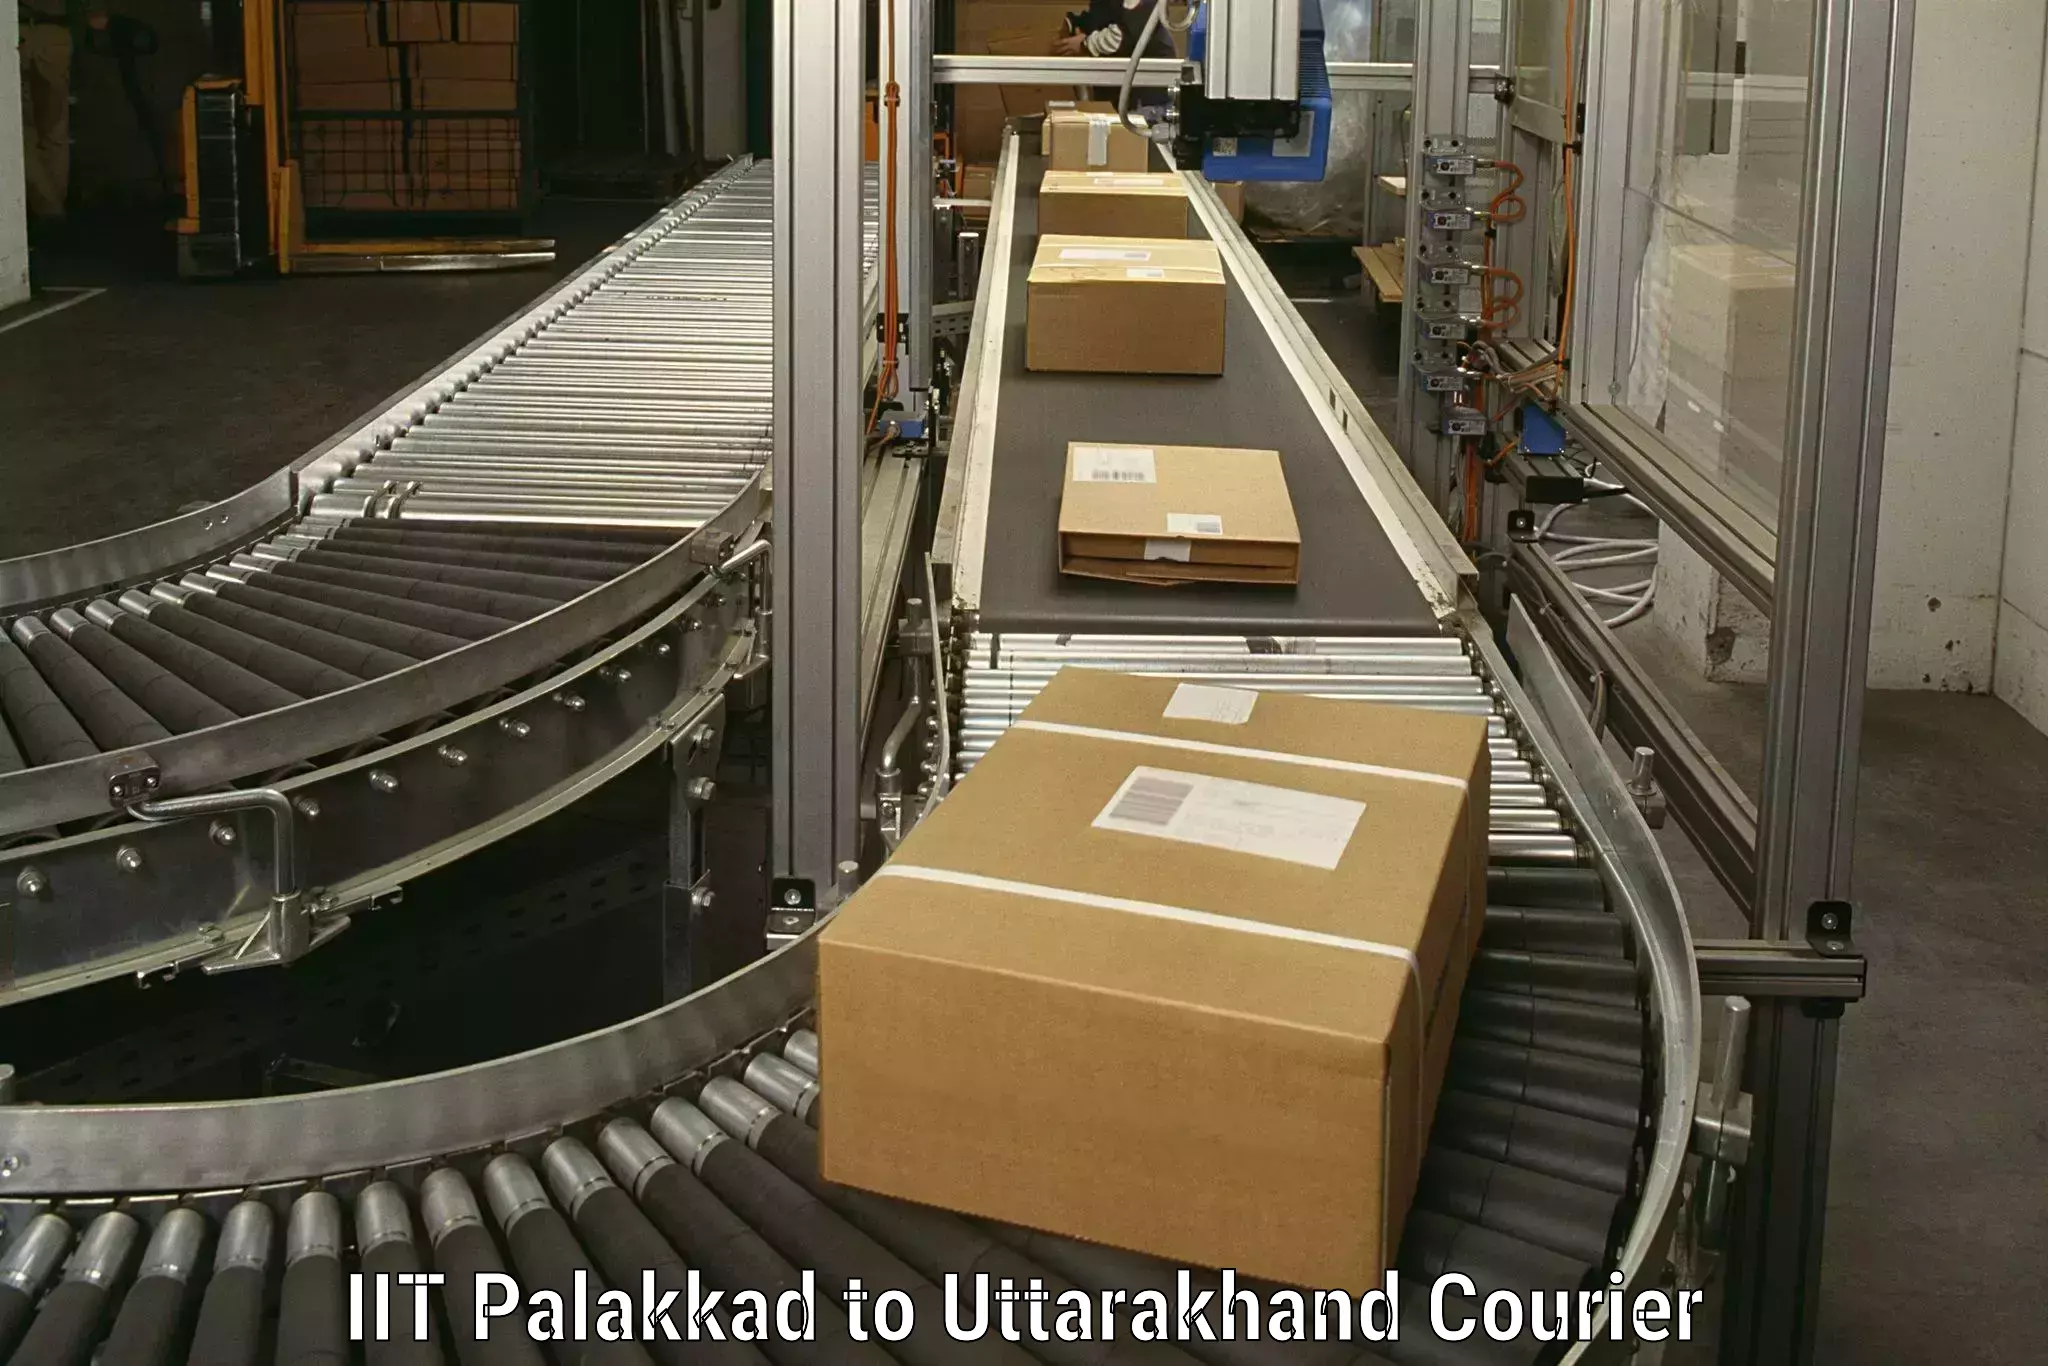 Specialized moving company IIT Palakkad to Uttarakhand